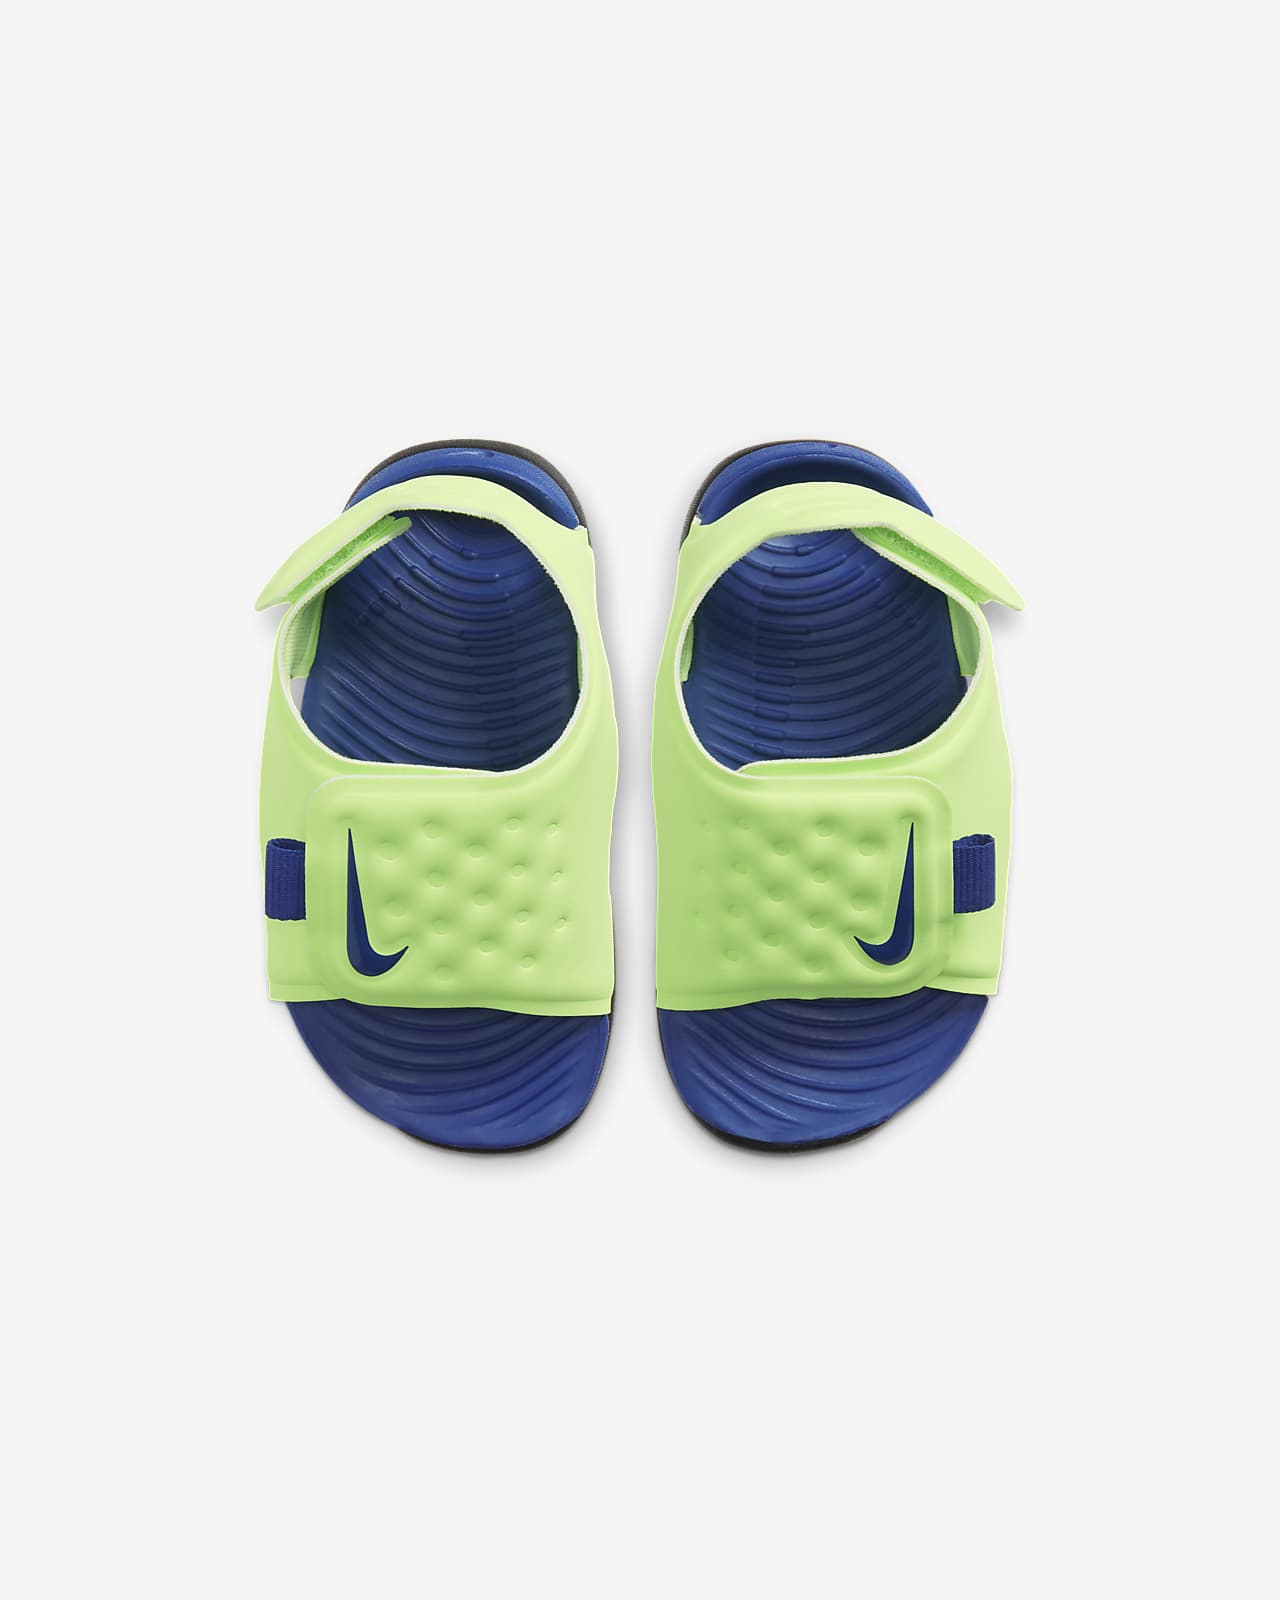 Nike Sunray Adjust 5 Sandale für 